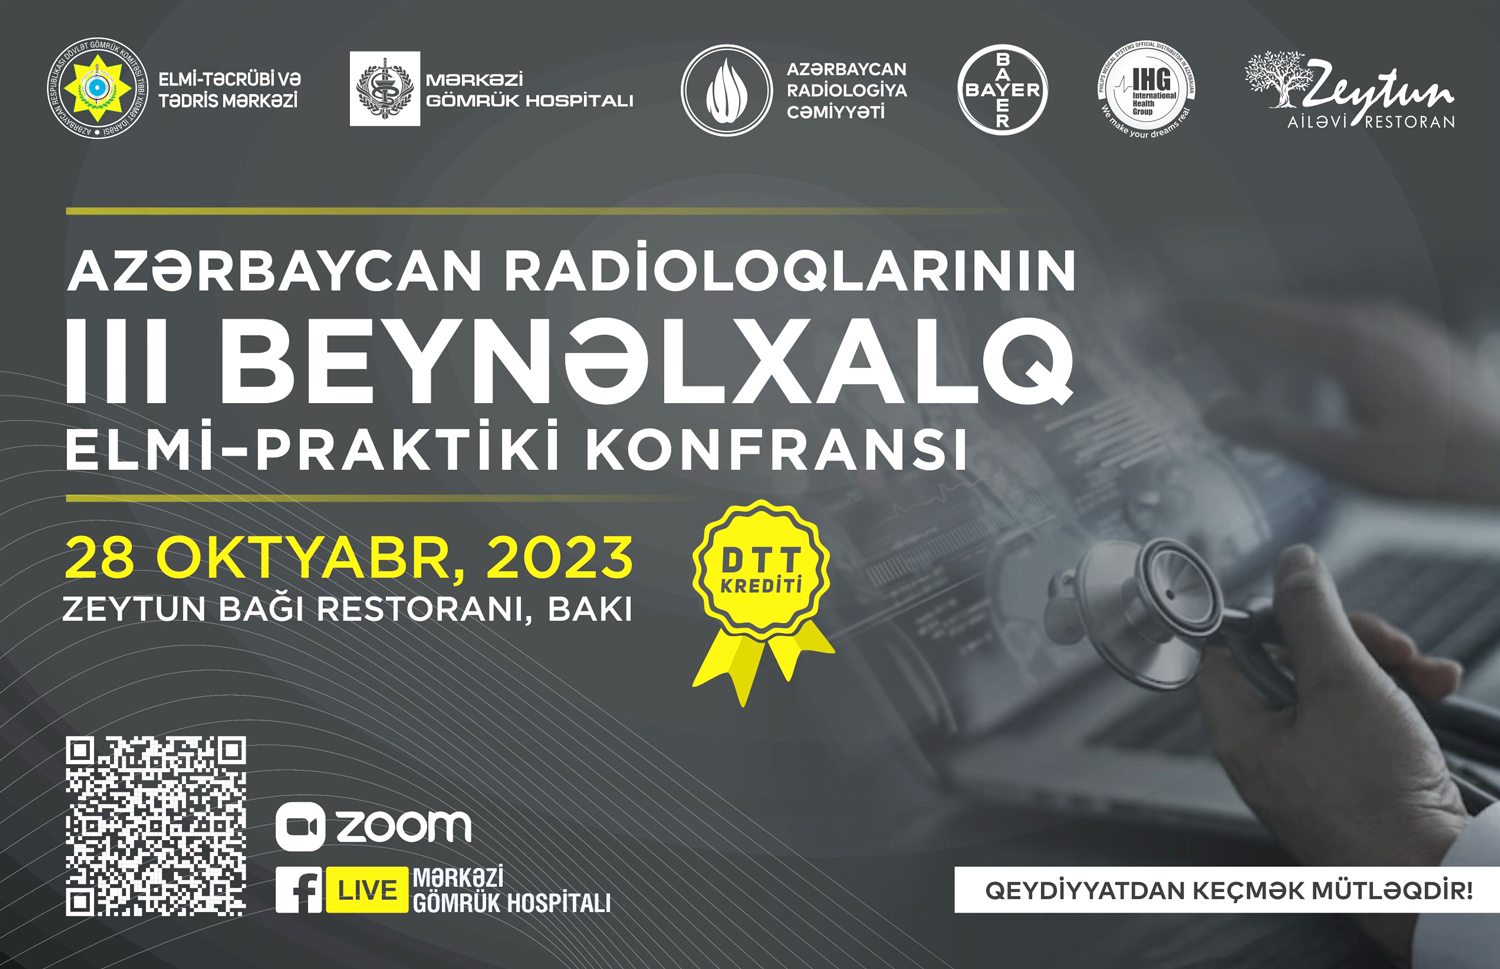 Azərbaycan Radioloqlarının III Beynəlxalq Elmi–Praktik Konfransı keçiriləcək